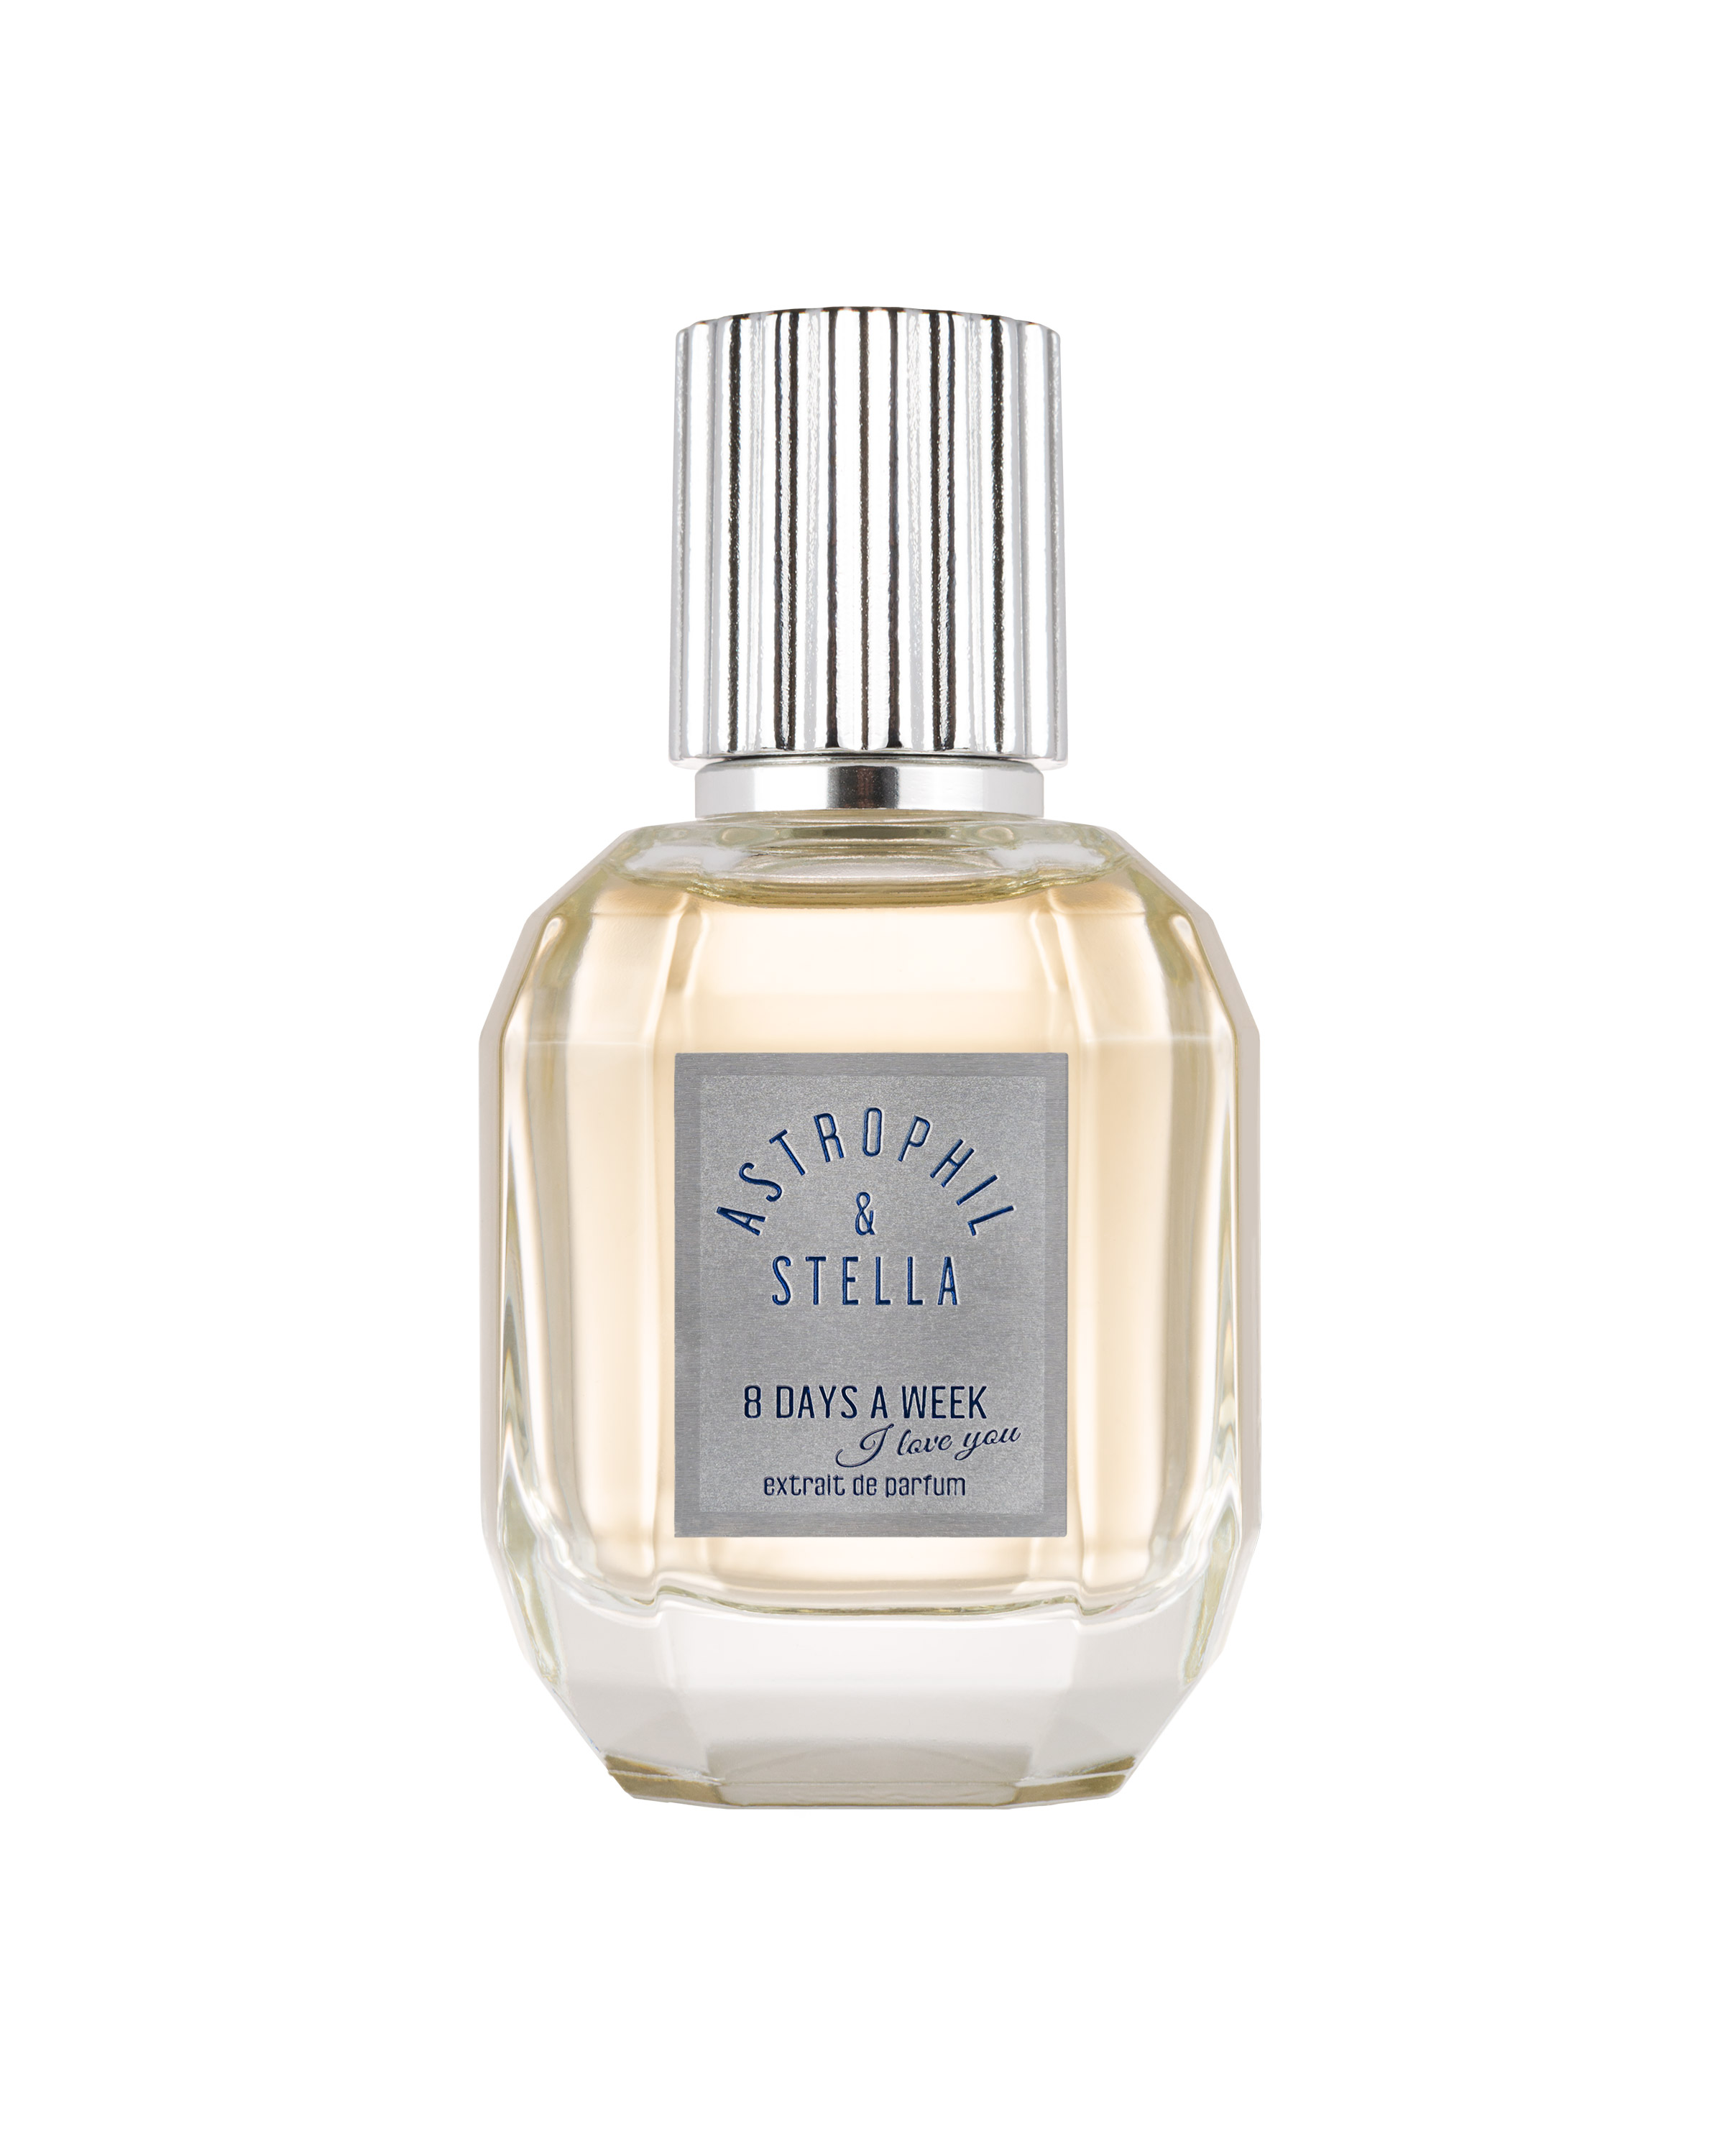 Astrophil & Stella - 8 Days a Week - Extrait de Parfum